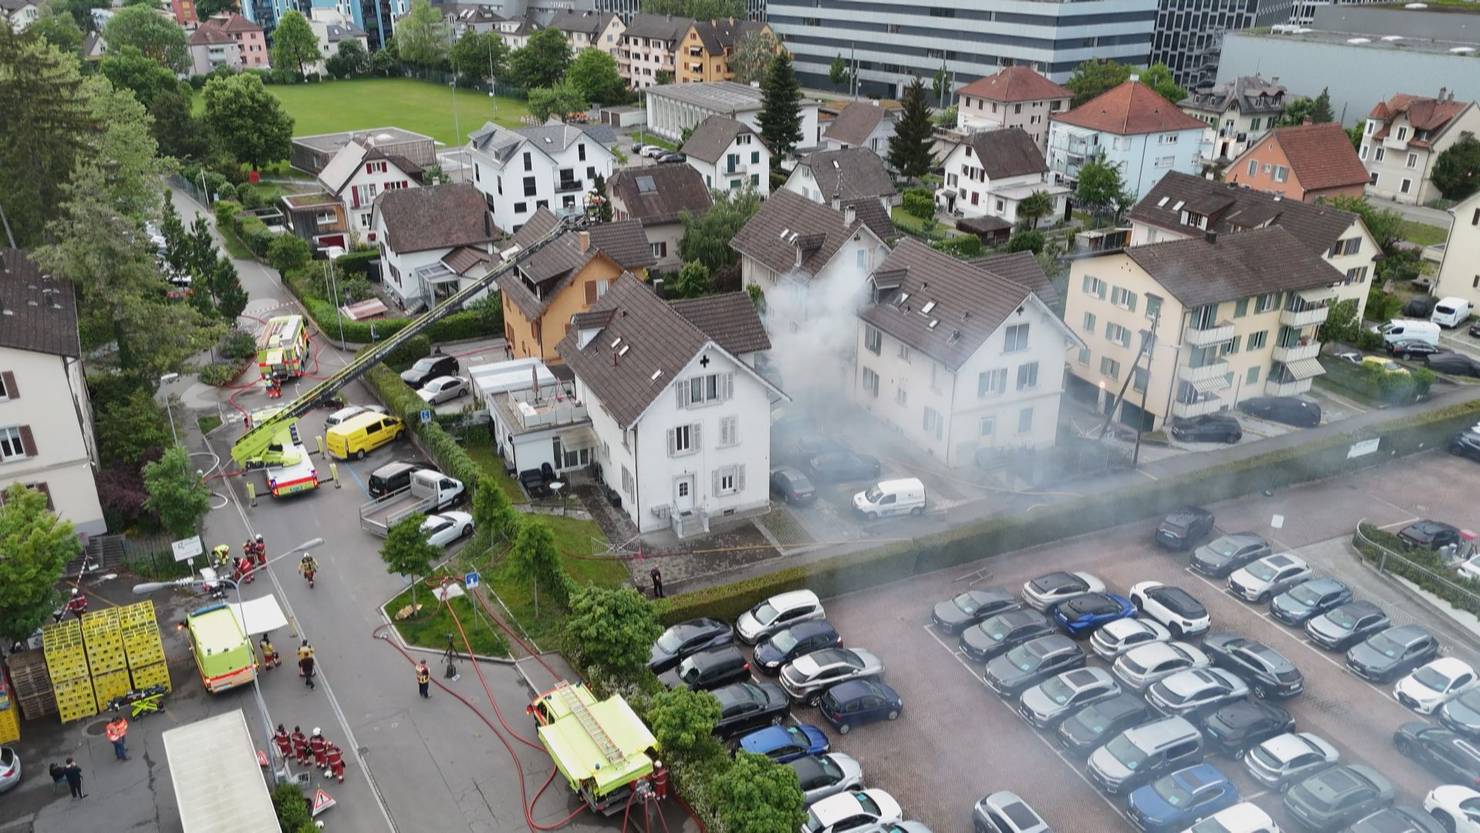 Brand in Schlieren: Schopf zwischen Häusern in Flammen | ZüriToday